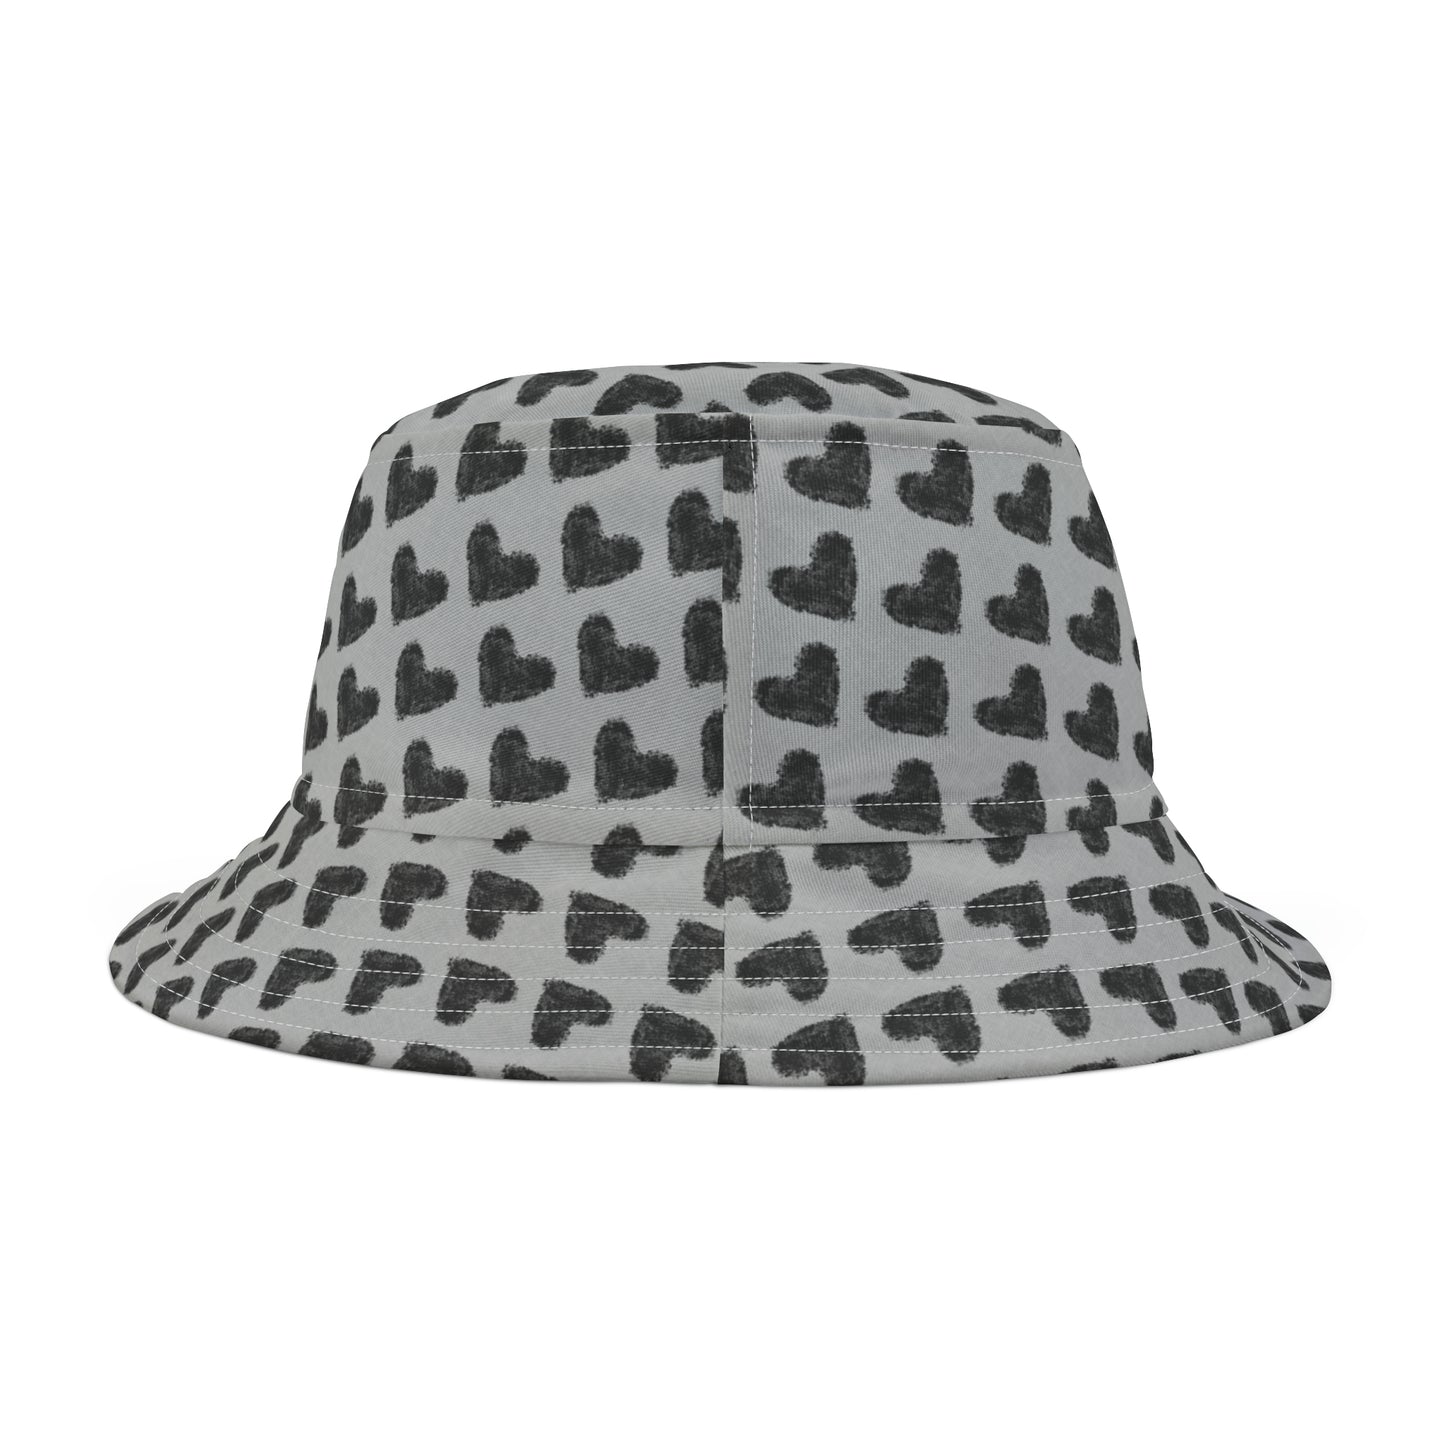 ECELUGICH Bucket Hat